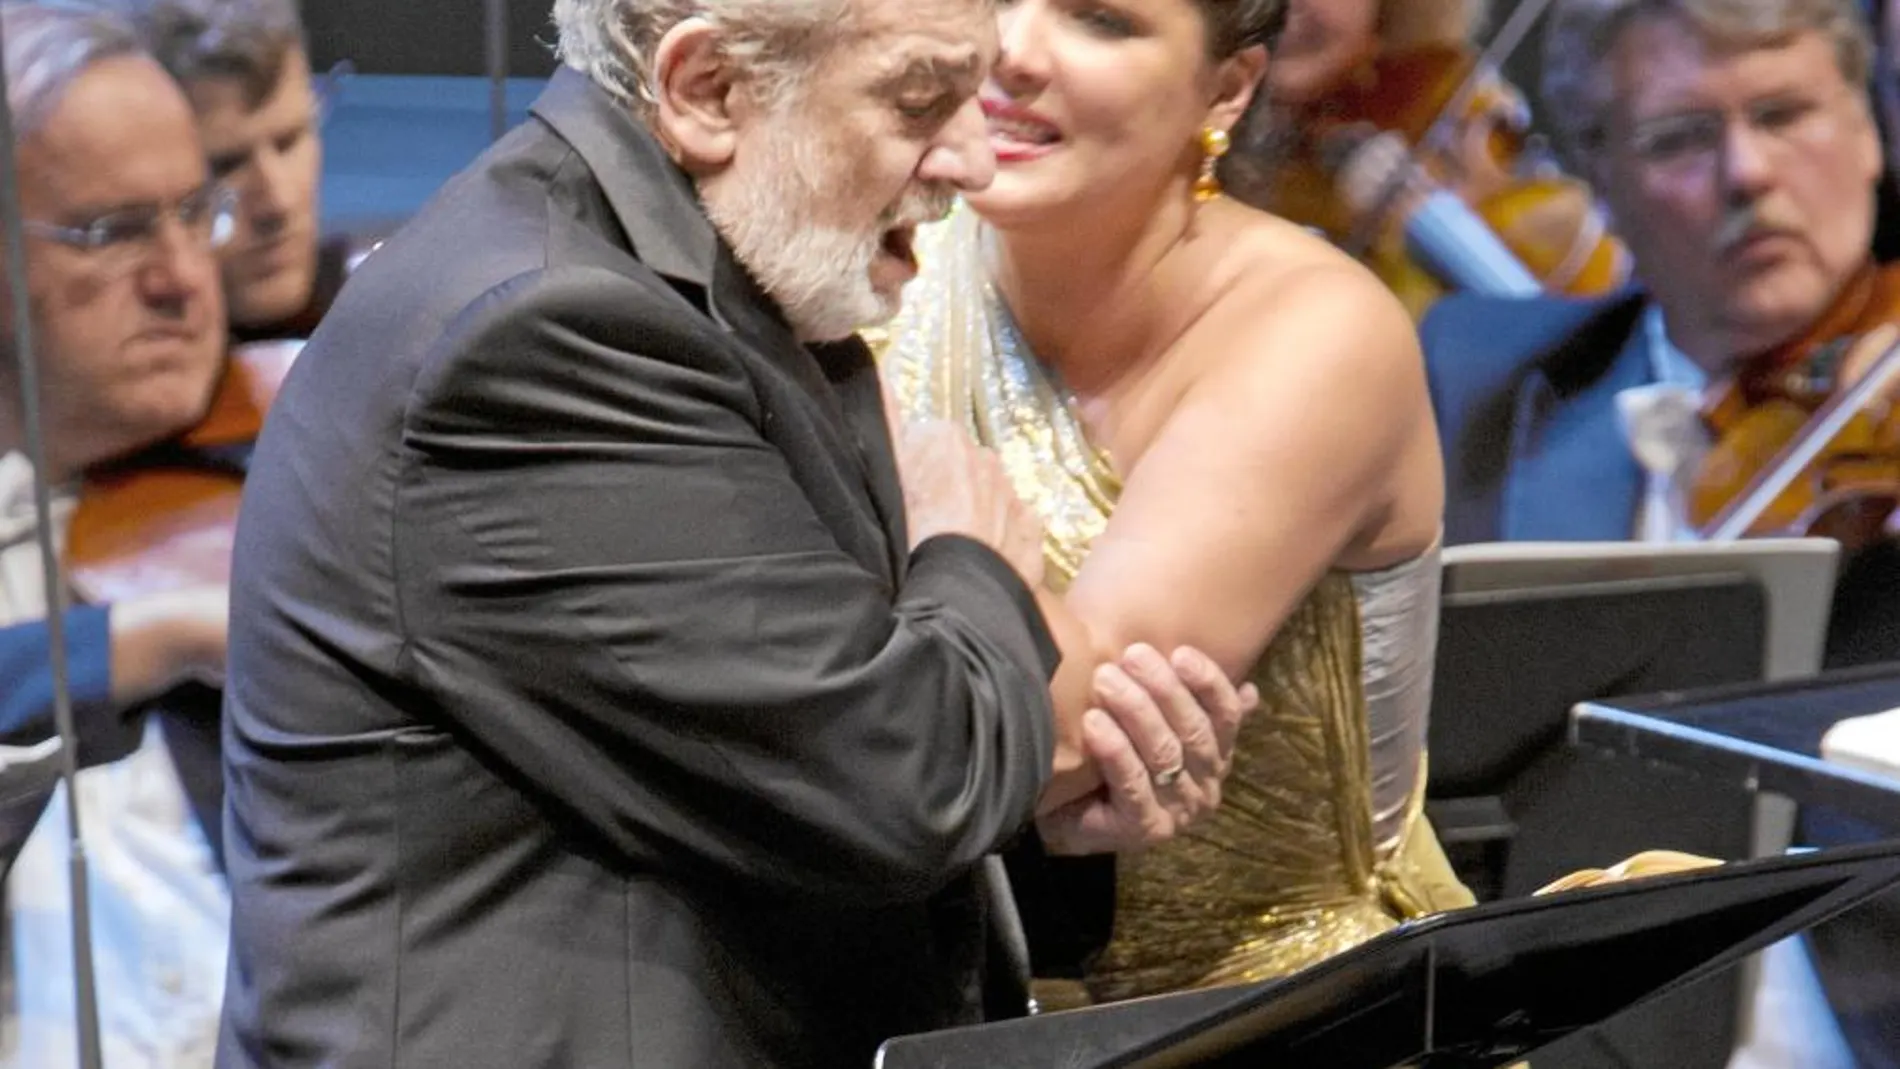 Plácido Domingo, en la imagen al final de la representación junto a Netrebko, volvió a dar una lección de entrega